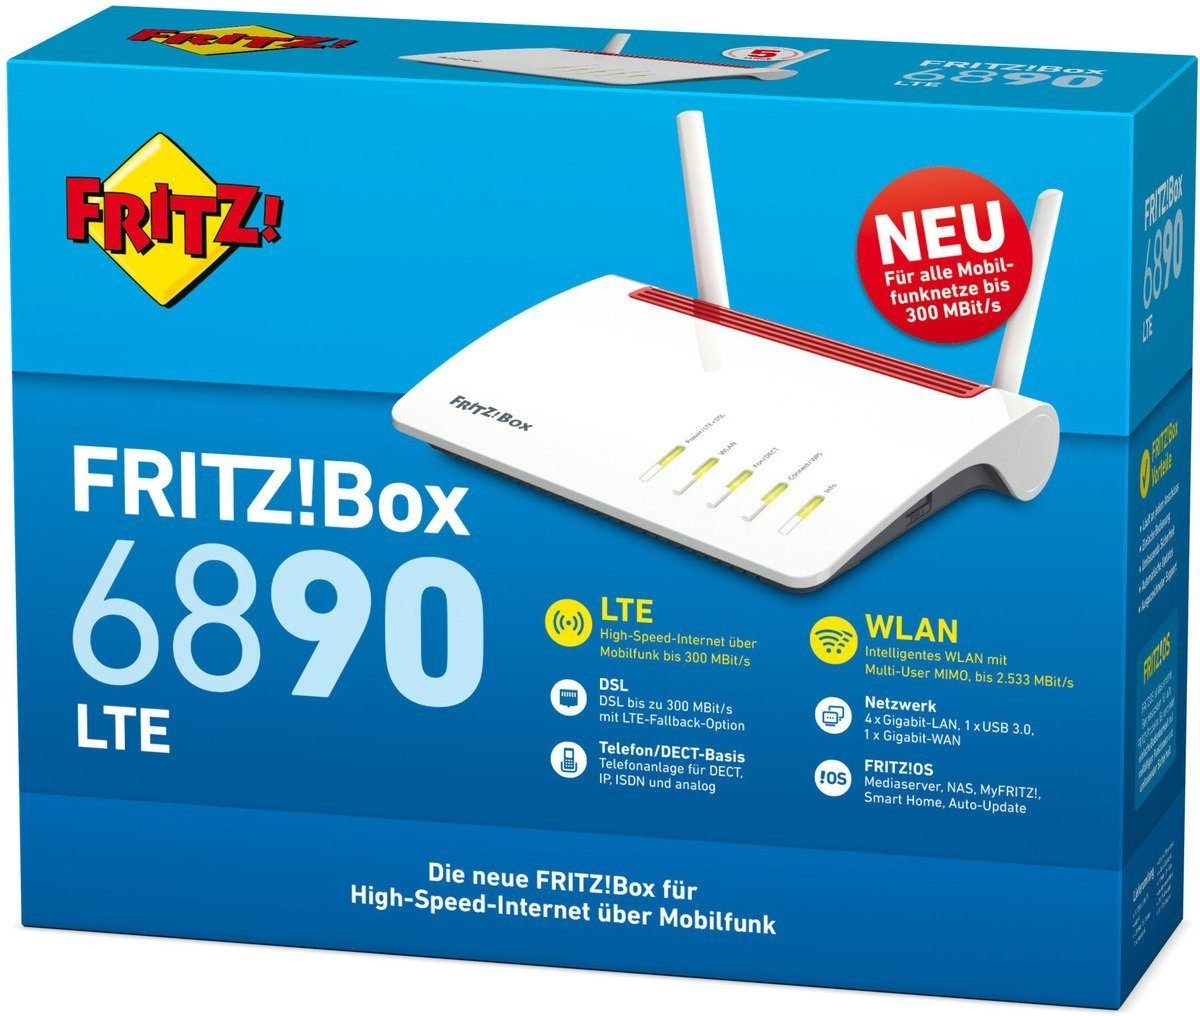 FRITZ!Box AVM 6890 LTE WLAN-Router